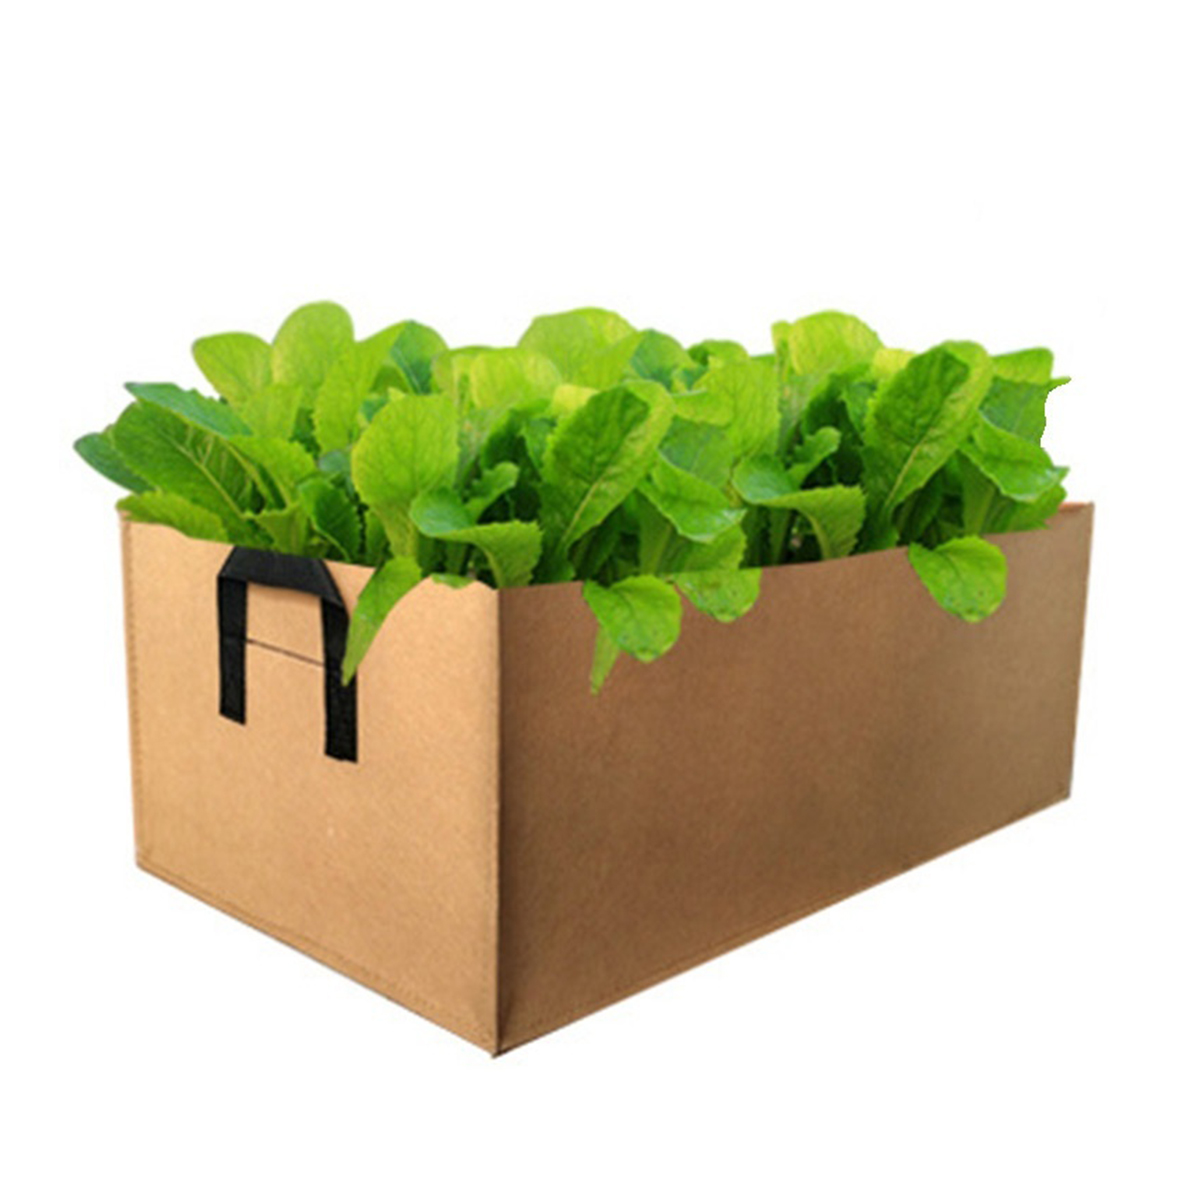 Garden-Planting-Grow-Bag-150x60x20cm-Fabric-Potato-Tomato-Planter-Outdoor-Box-1699882-4